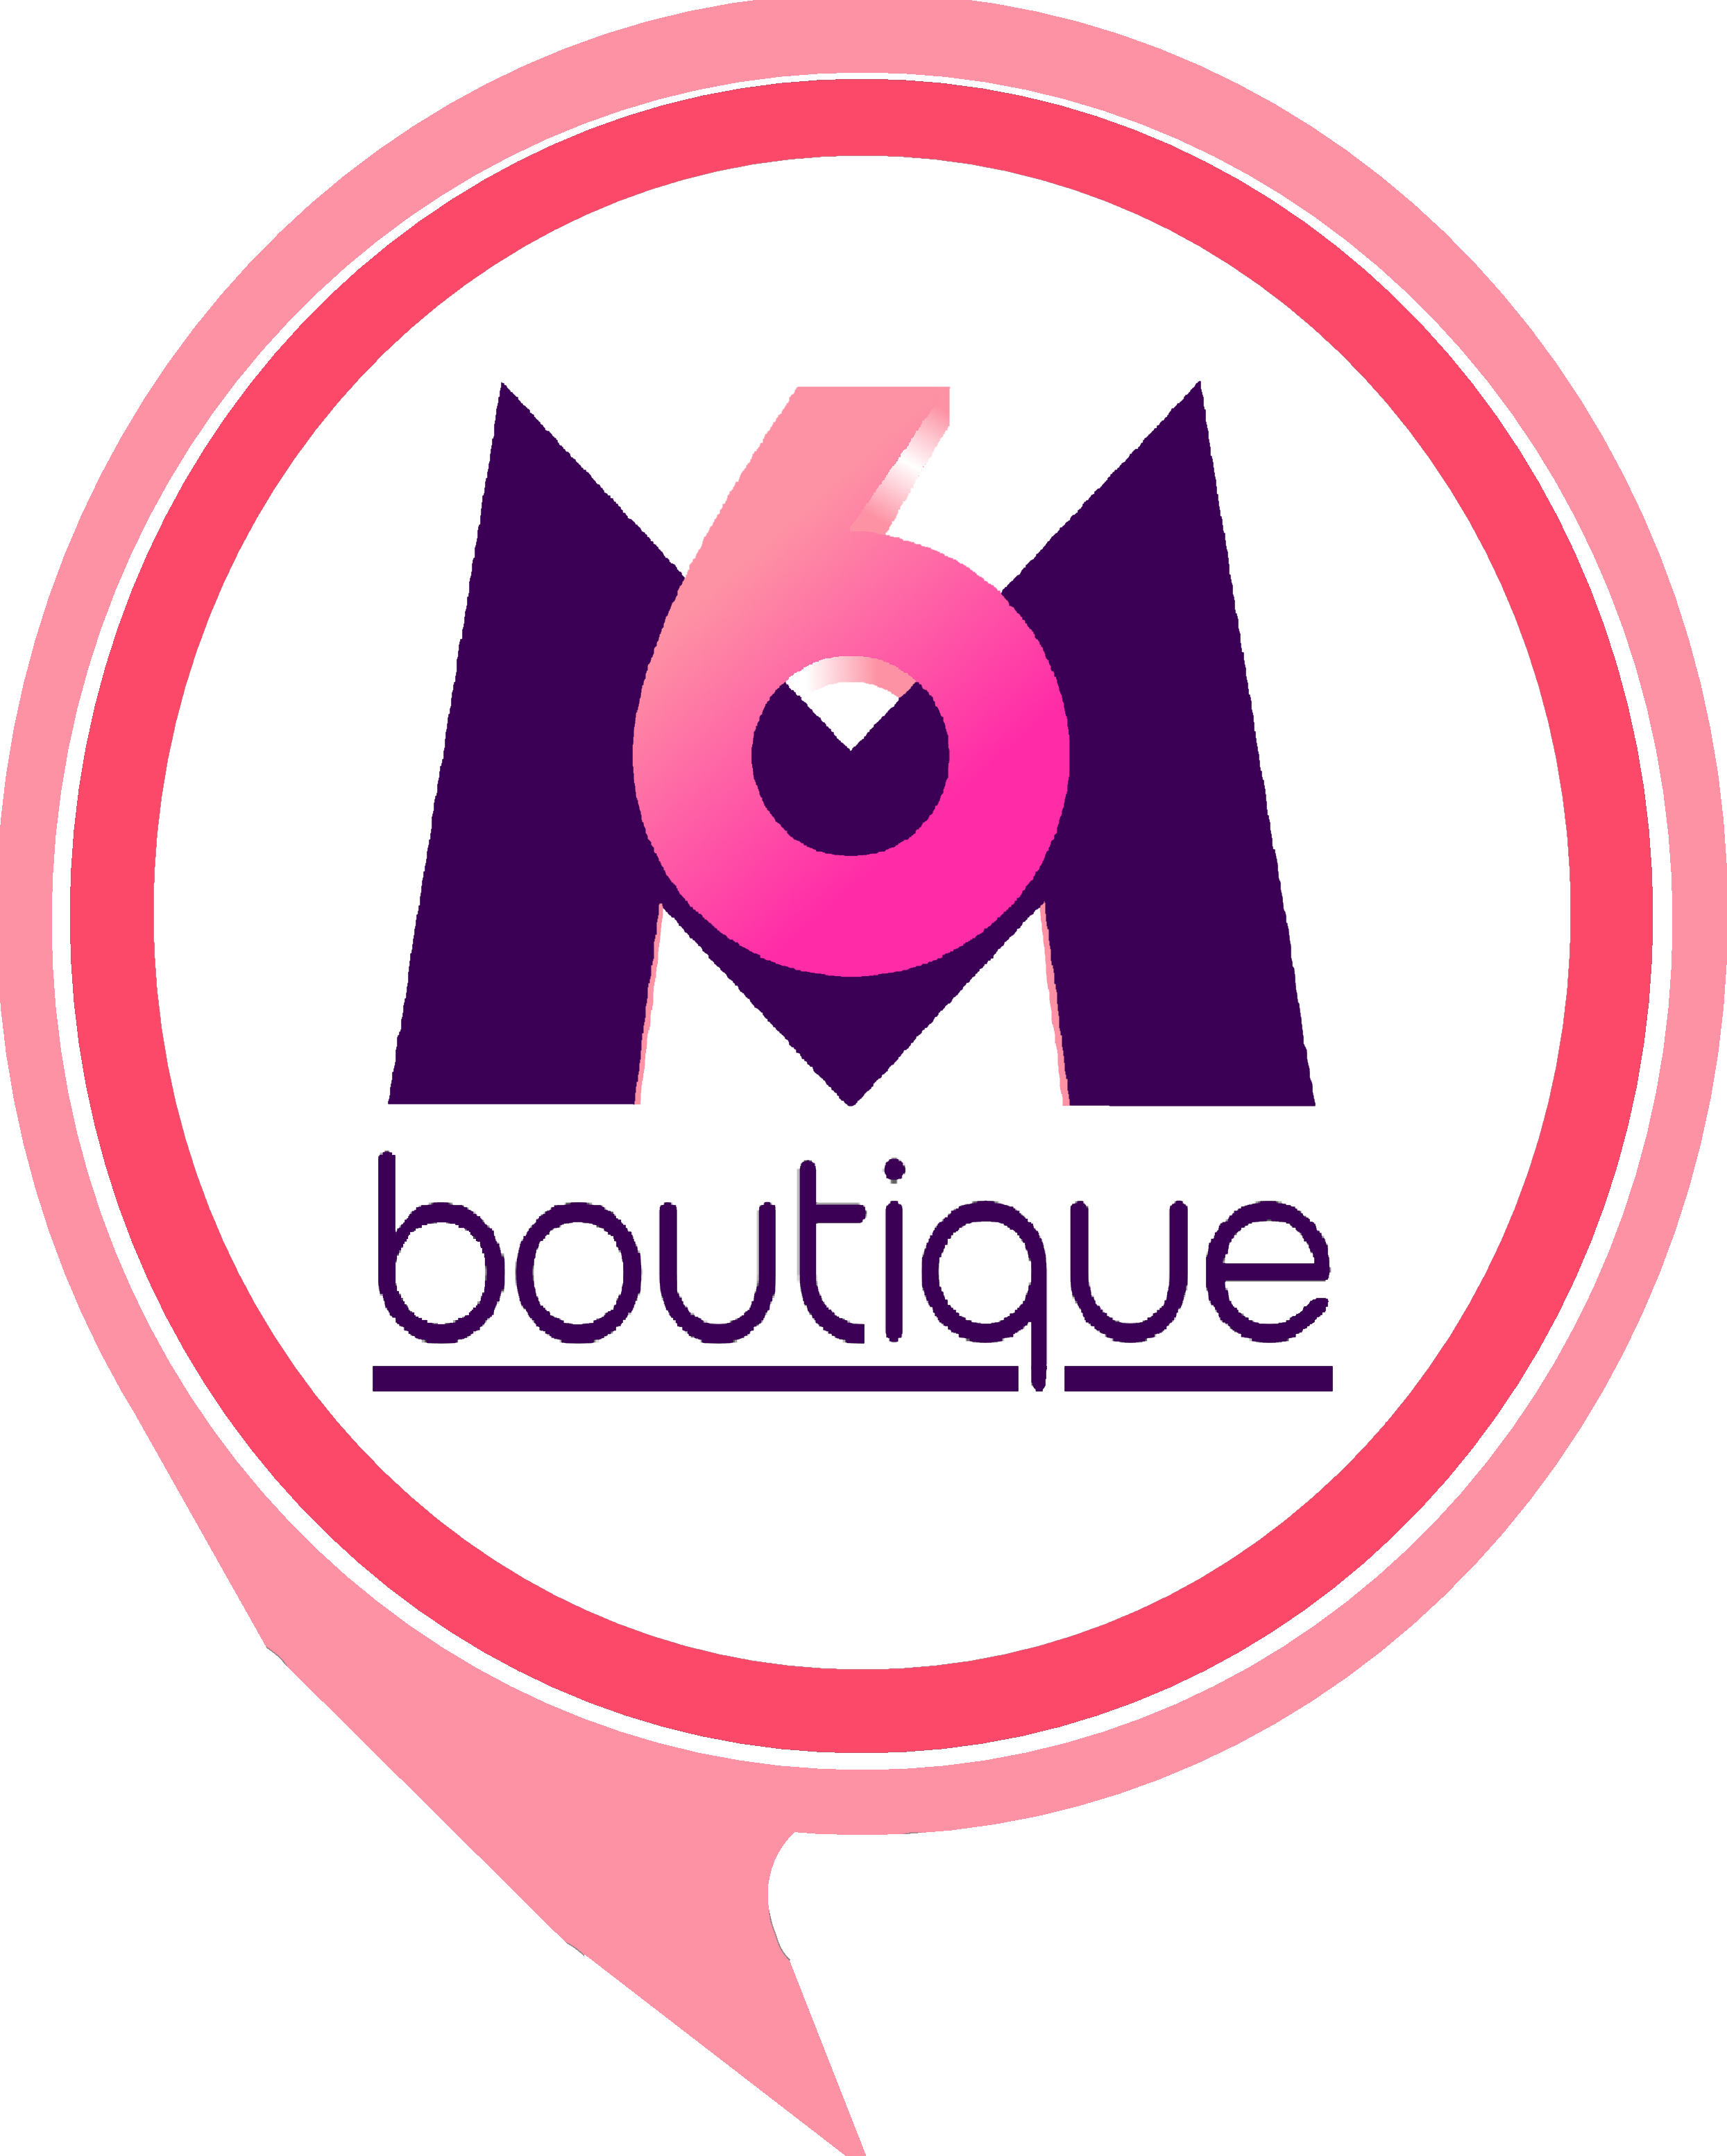 M 6 shop. Regis Corporation логотип. Boutique logo. M6 Metropole Television. Logo for Boutique.